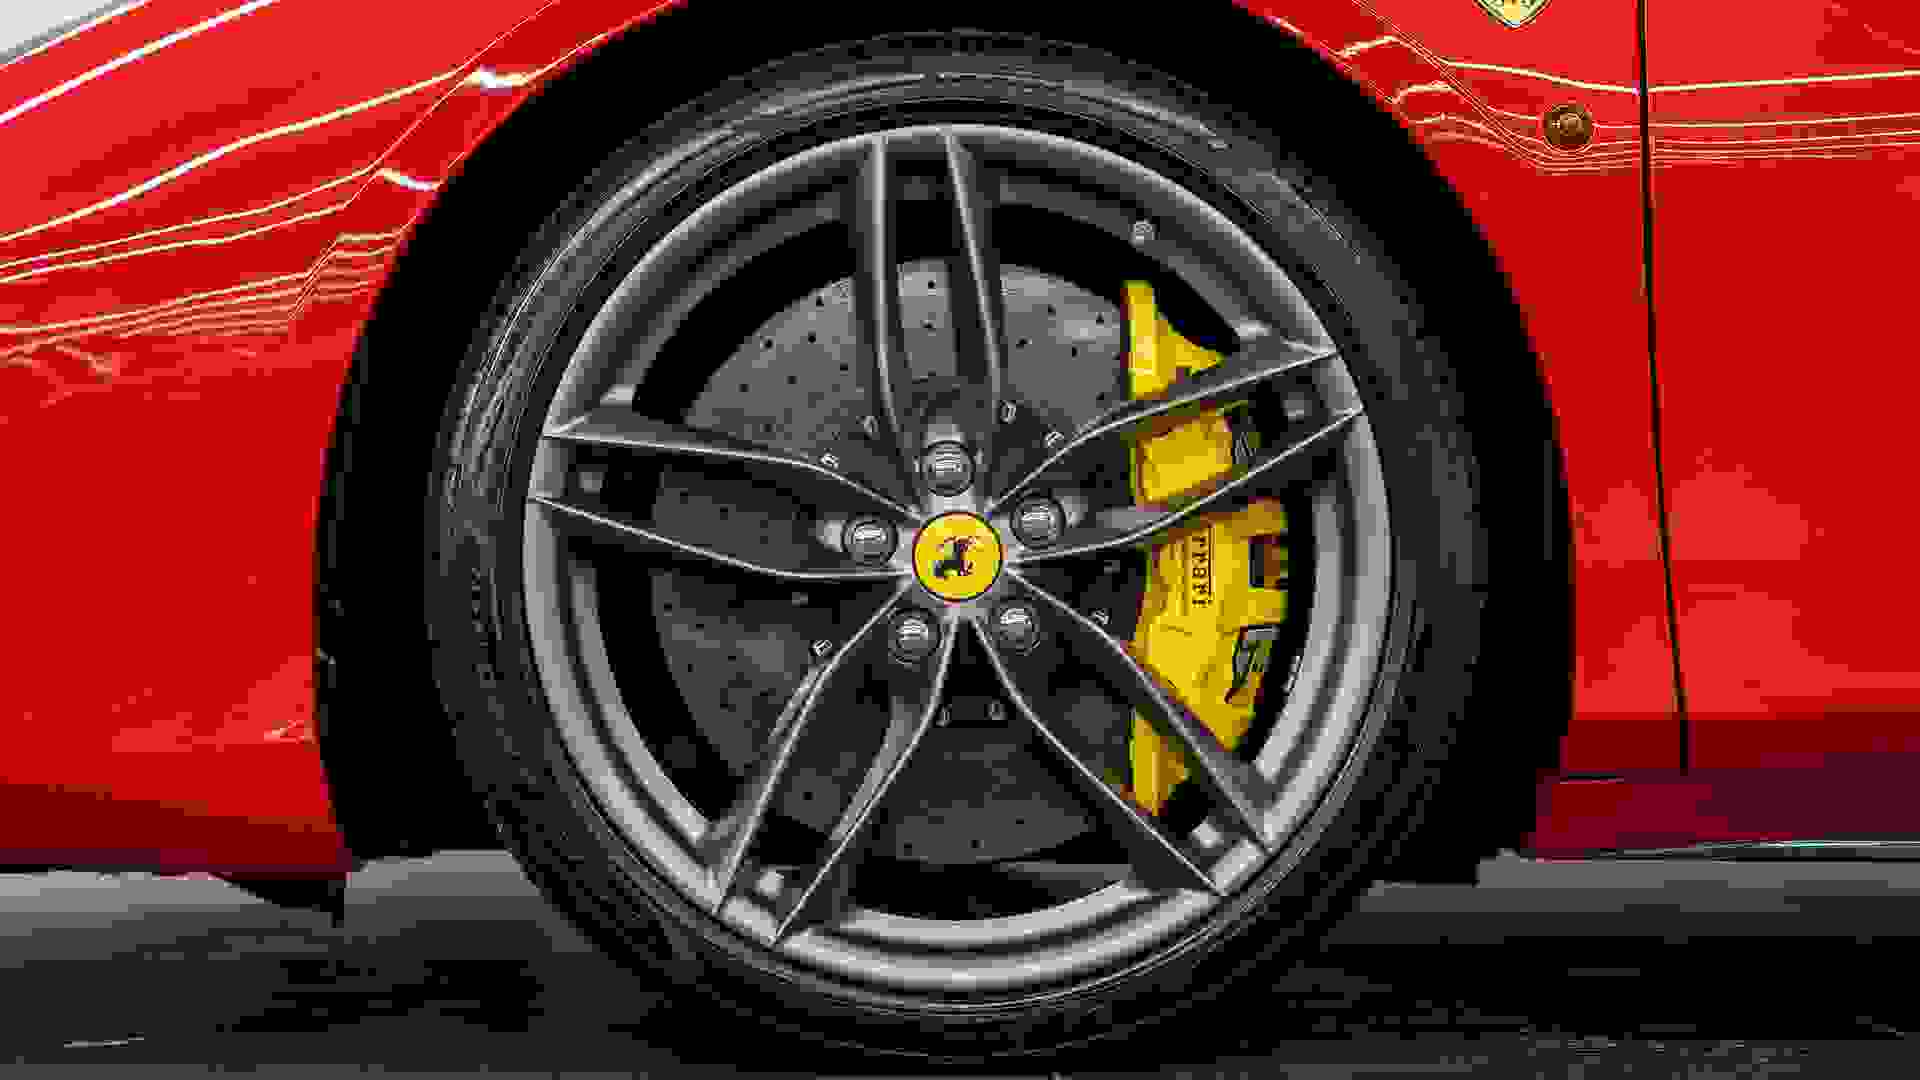 Ferrari 488 Photo ff8b4744-e9d4-4f48-9950-708a77f698a9.jpg